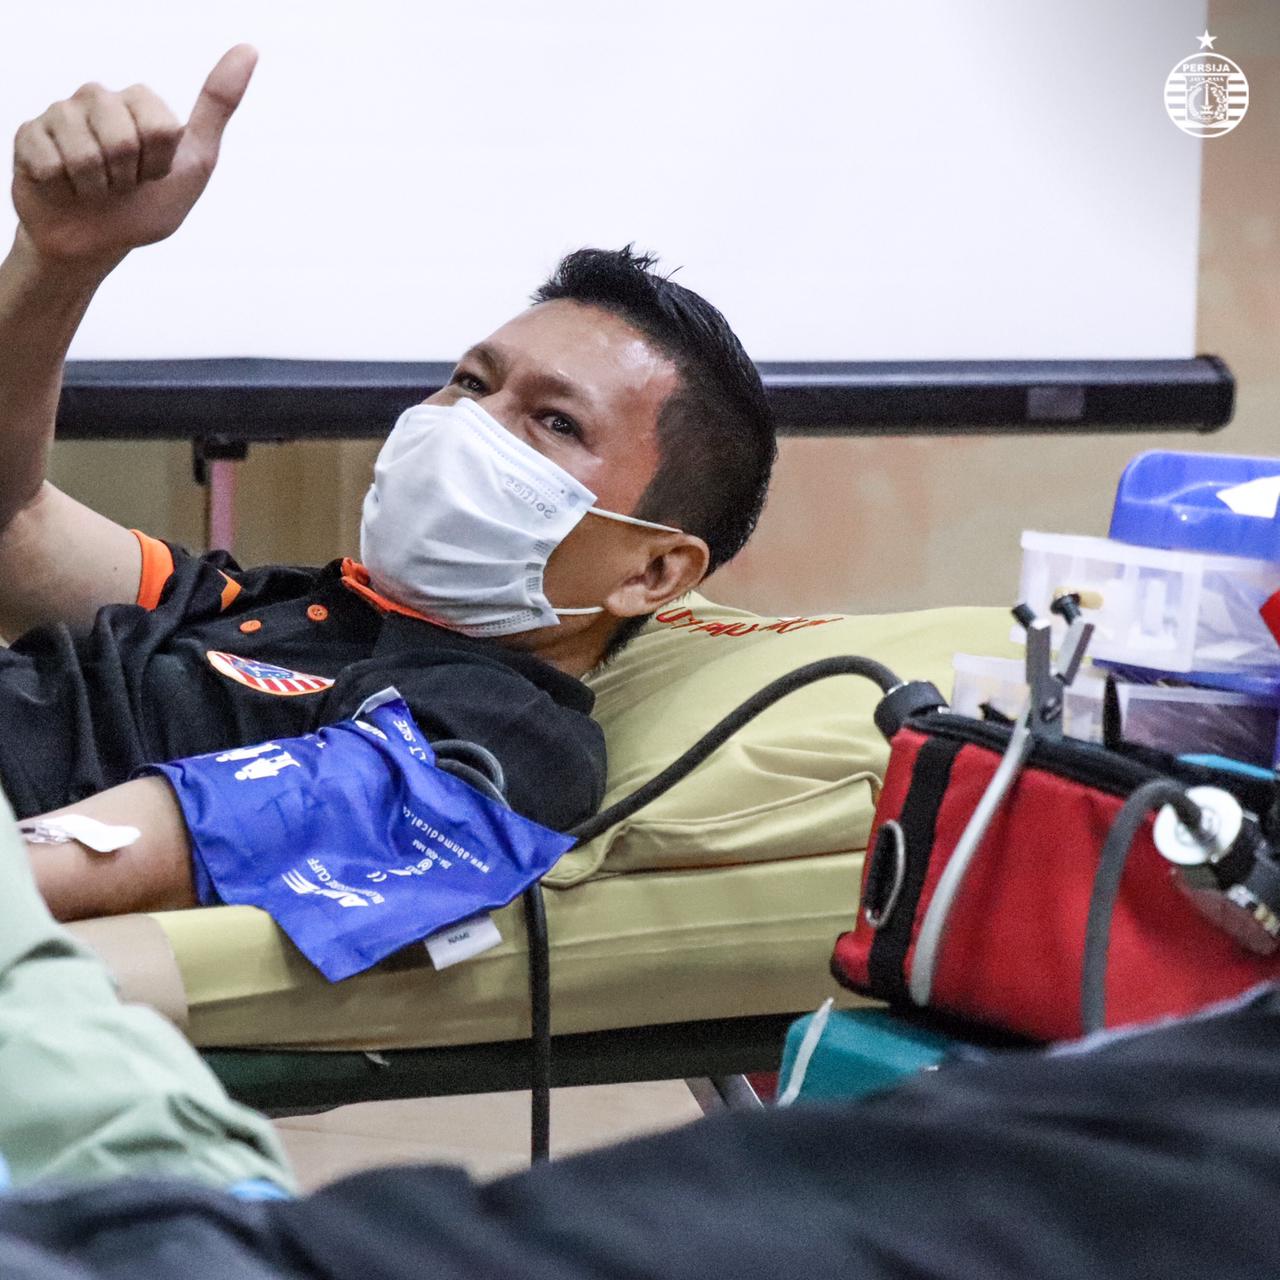 Usai Operasi Lutut, Ismed Sofyan Optimistis Bisa Kembali ke Top Level untuk Persija